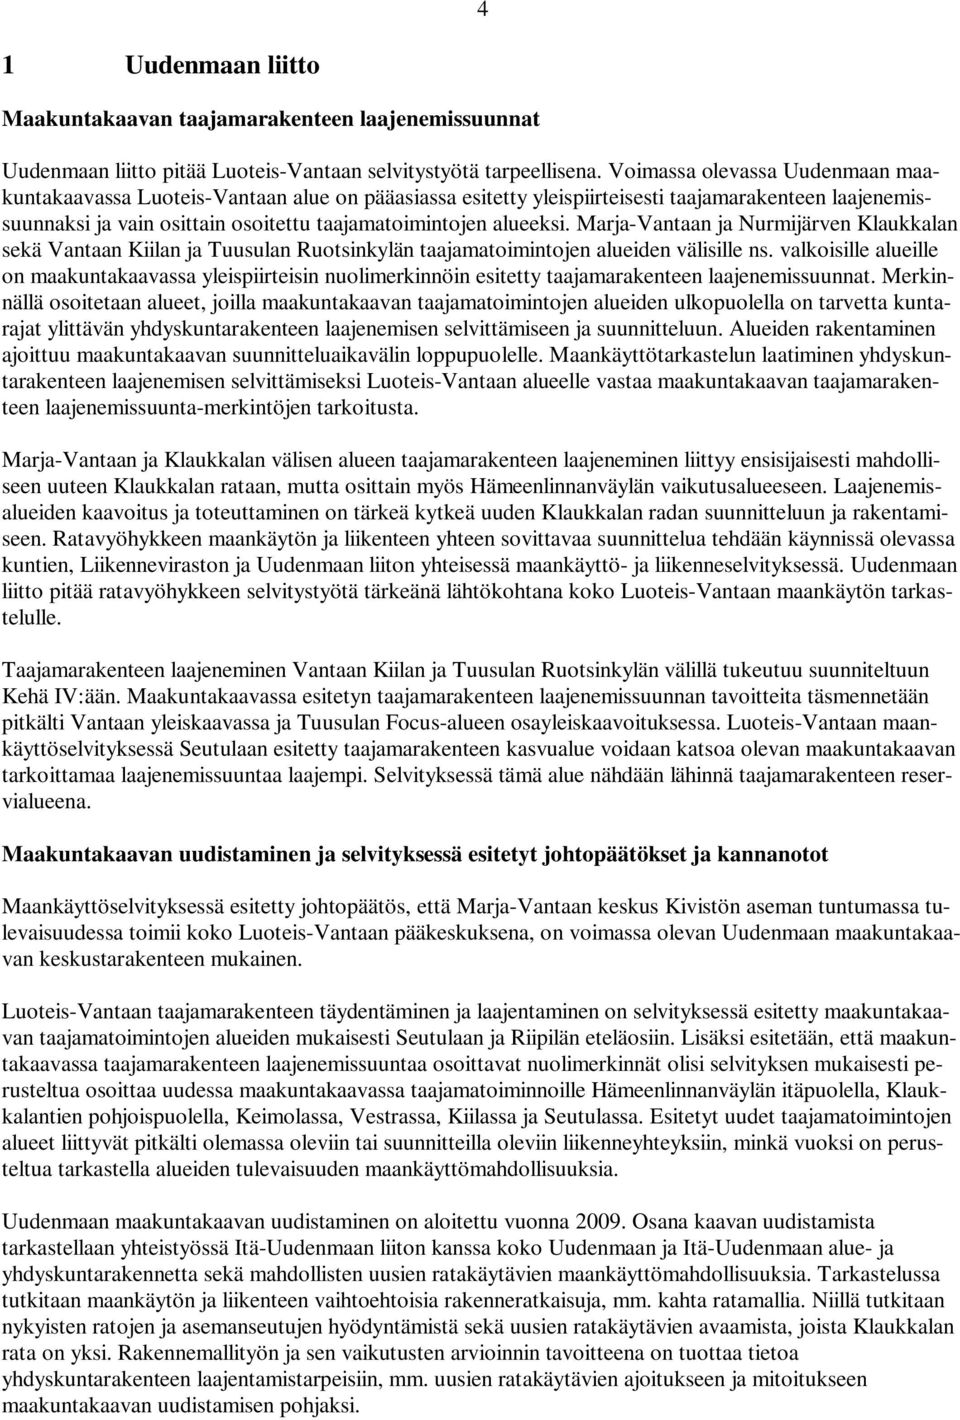 Marja-Vantaan ja Nurmijärven Klaukkalan sekä Vantaan Kiilan ja Tuusulan Ruotsinkylän taajamatoimintojen alueiden välisille ns.